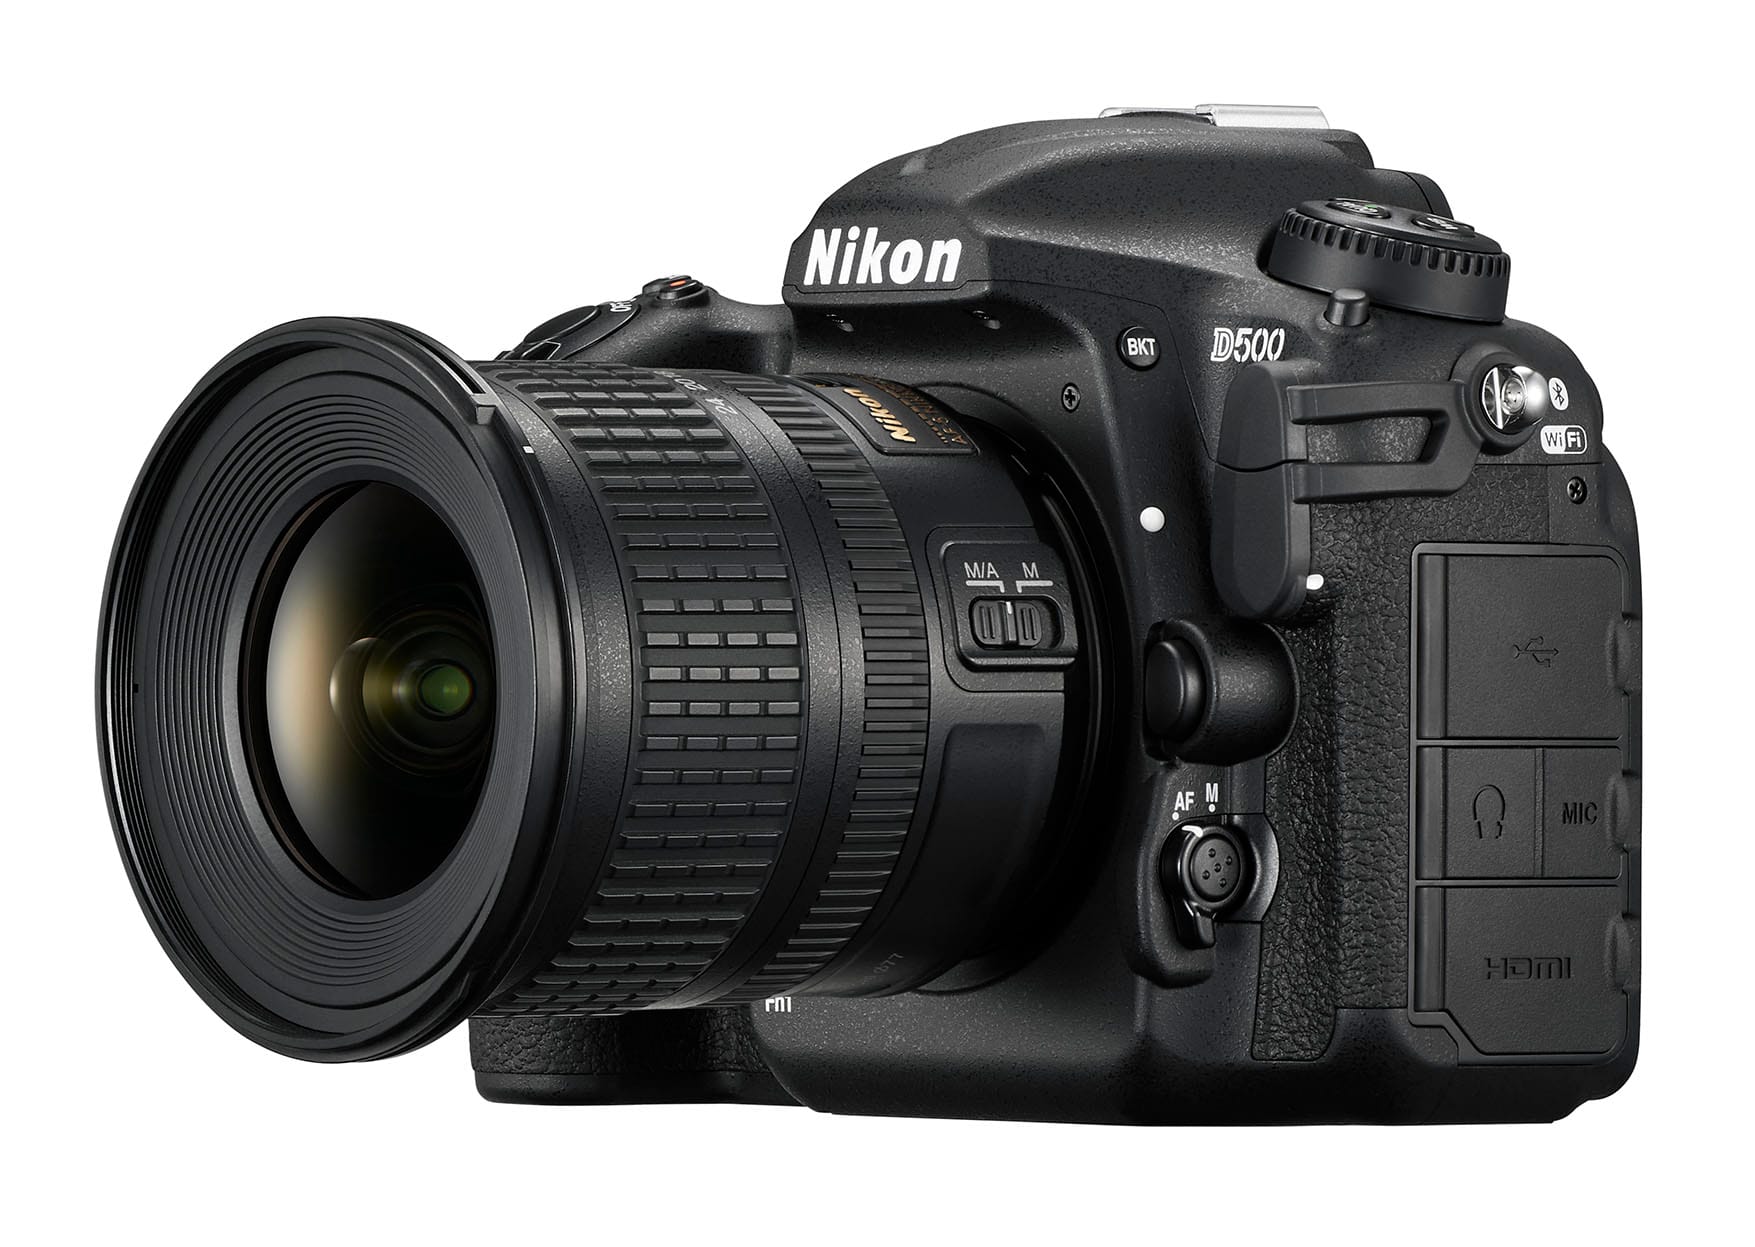 Die beste "Prosumer DSLR-Kamera", also die Spiegelreflexkamera für ambitionierte Nutzer, ist die Nikon D500